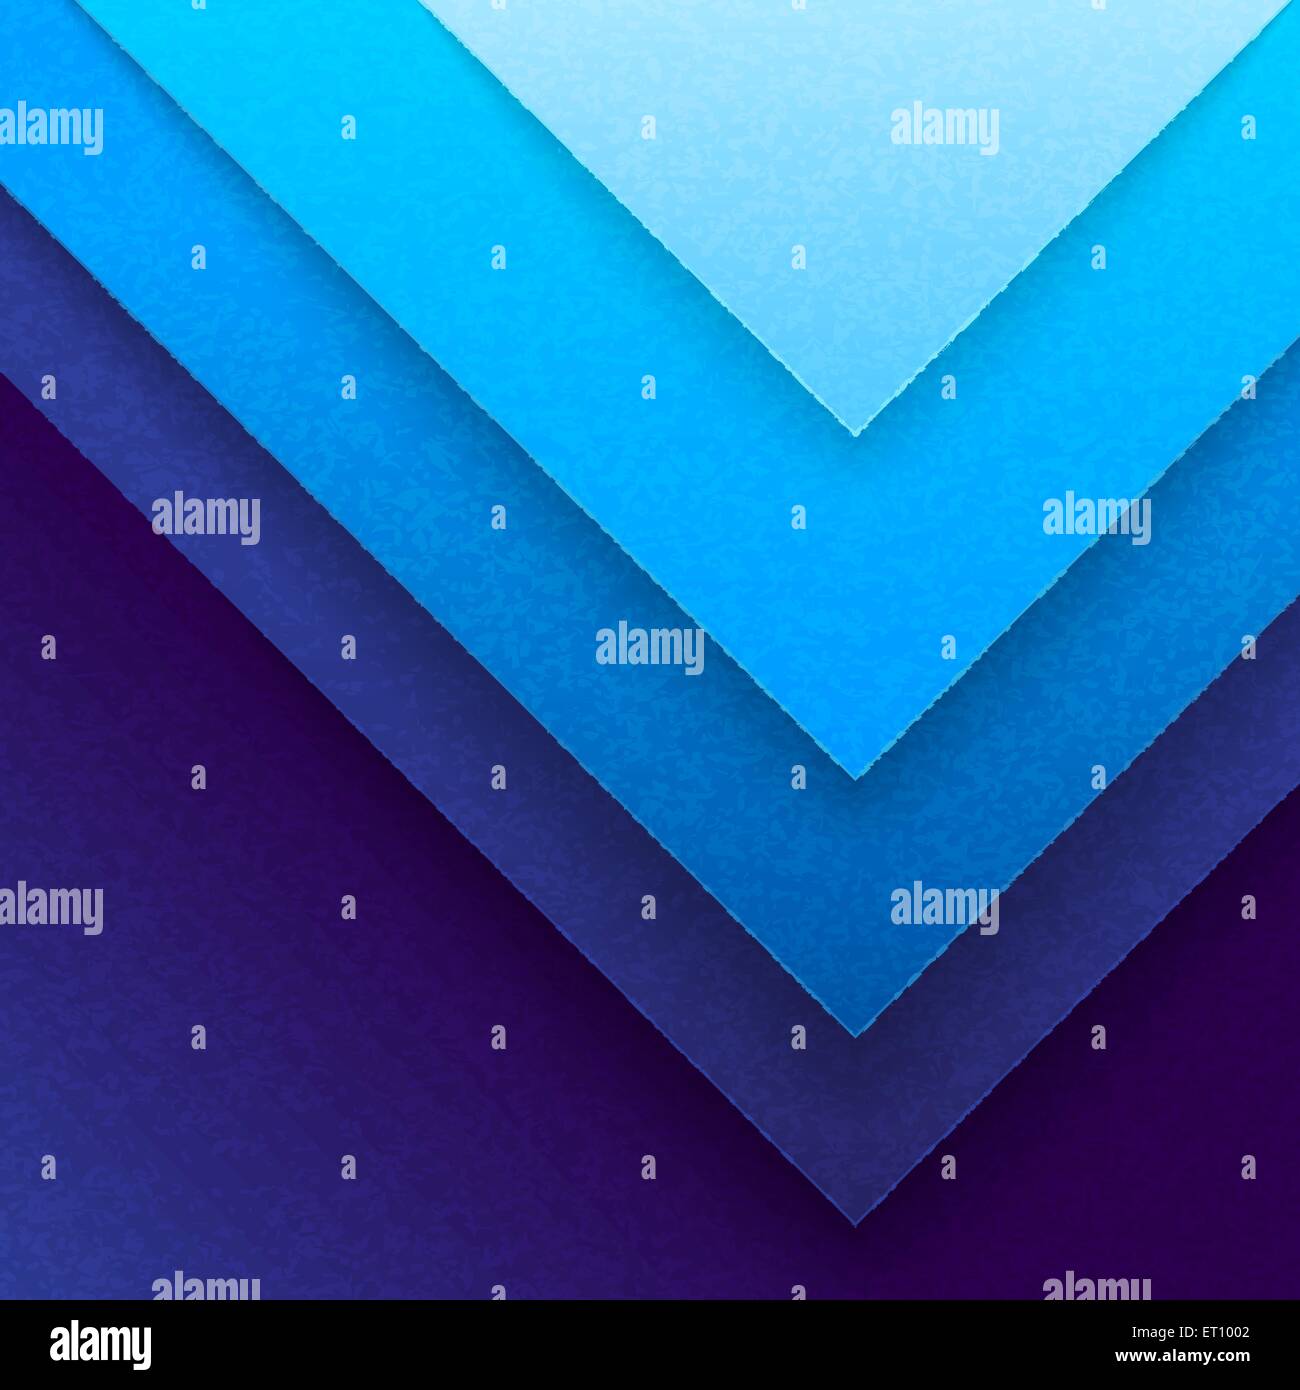 Abstract blue triangle papier des formes. Vecteur EPS RVB 10 Illustration de Vecteur